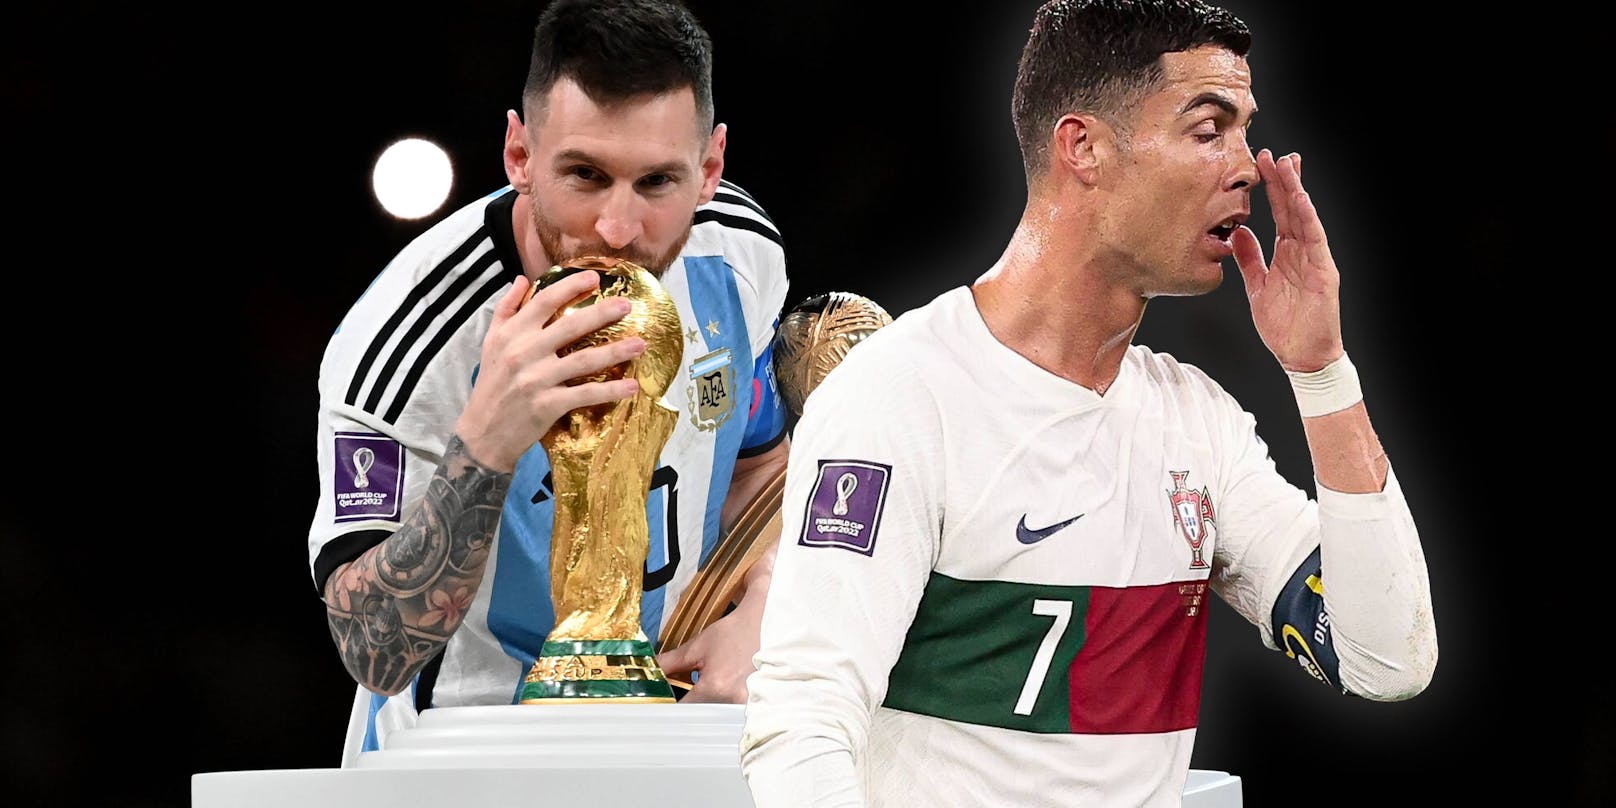 Schlechter Verlierer? Ronaldo ignoriert Messi-Triumph